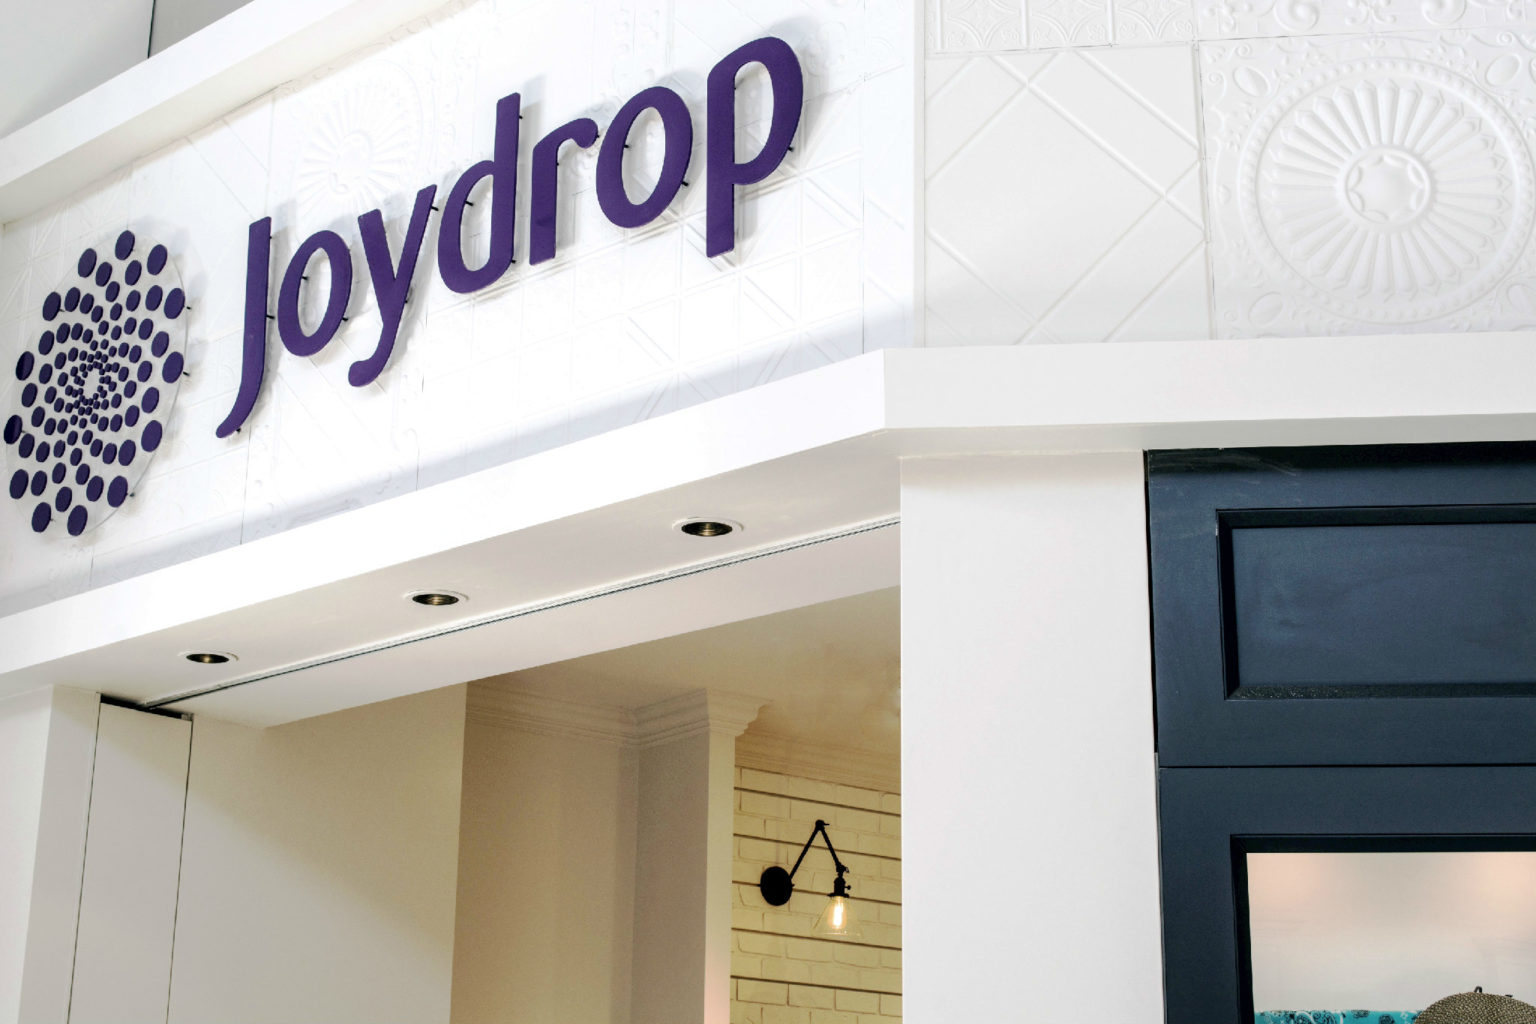 Joydrop Retail Interior Design in Calgary Alberta Canada, by Cutler